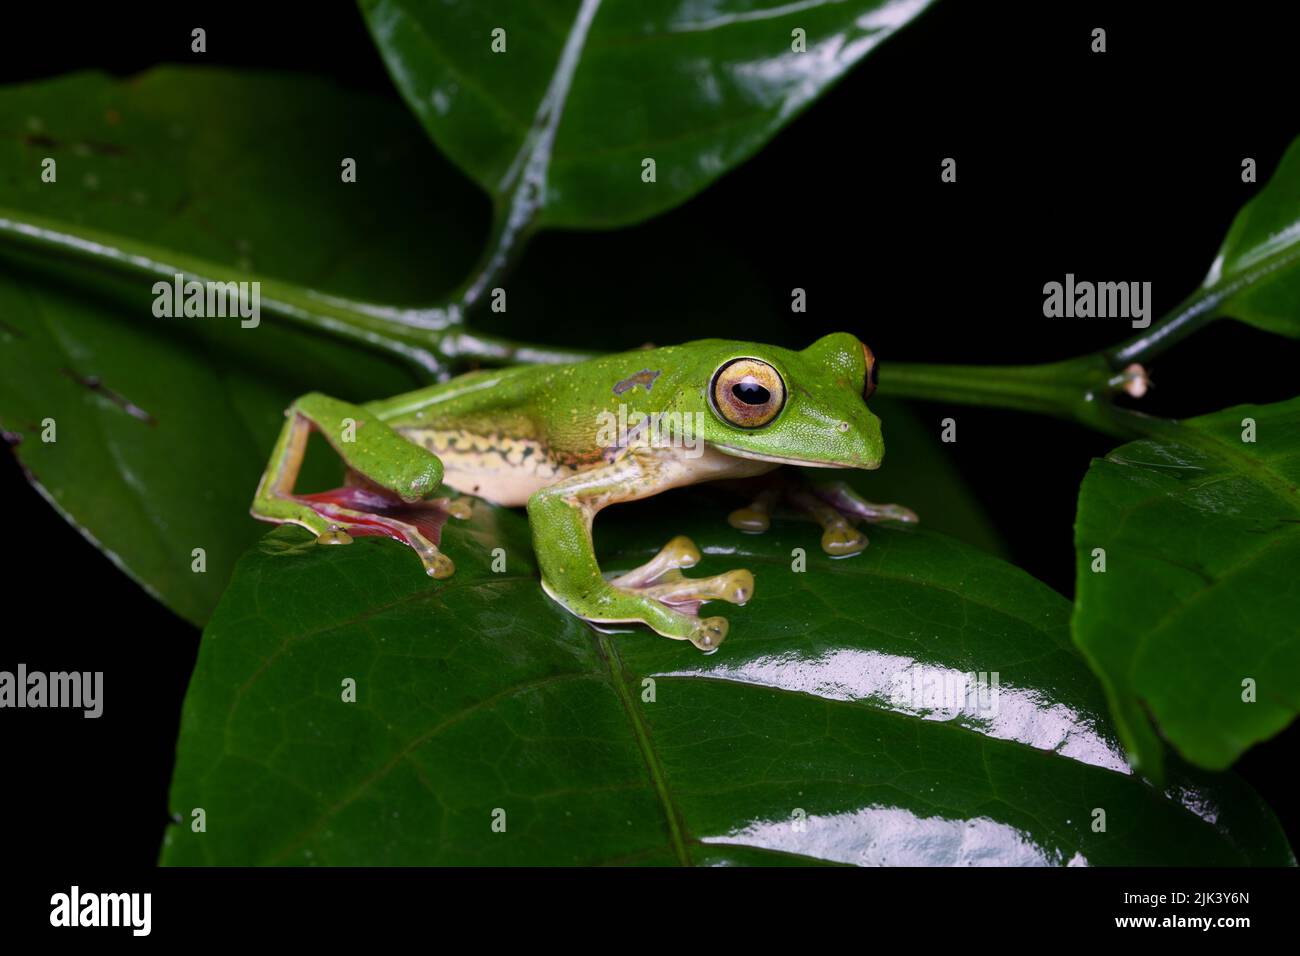 La rana parapendio di Malabar (Rhacophorus malabaricus) è una specie di rana arborea rinoforica che si trova nei Ghati occidentali dell'India. Foto Stock